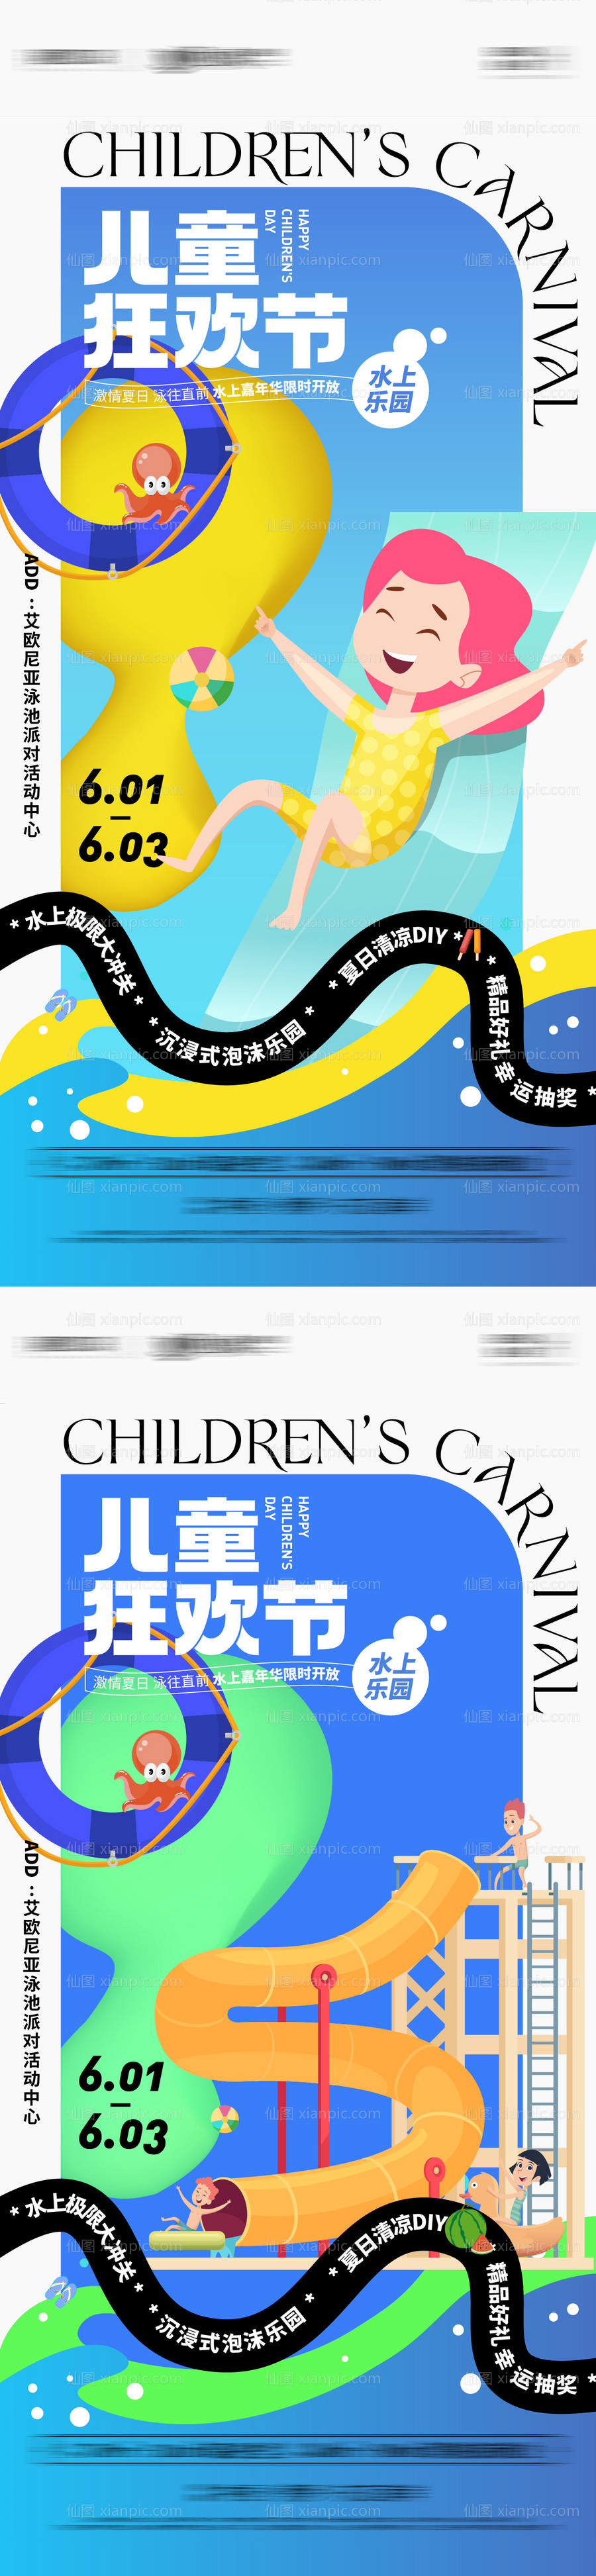 素材乐-六一儿童节水上嘉年华活动系列海报